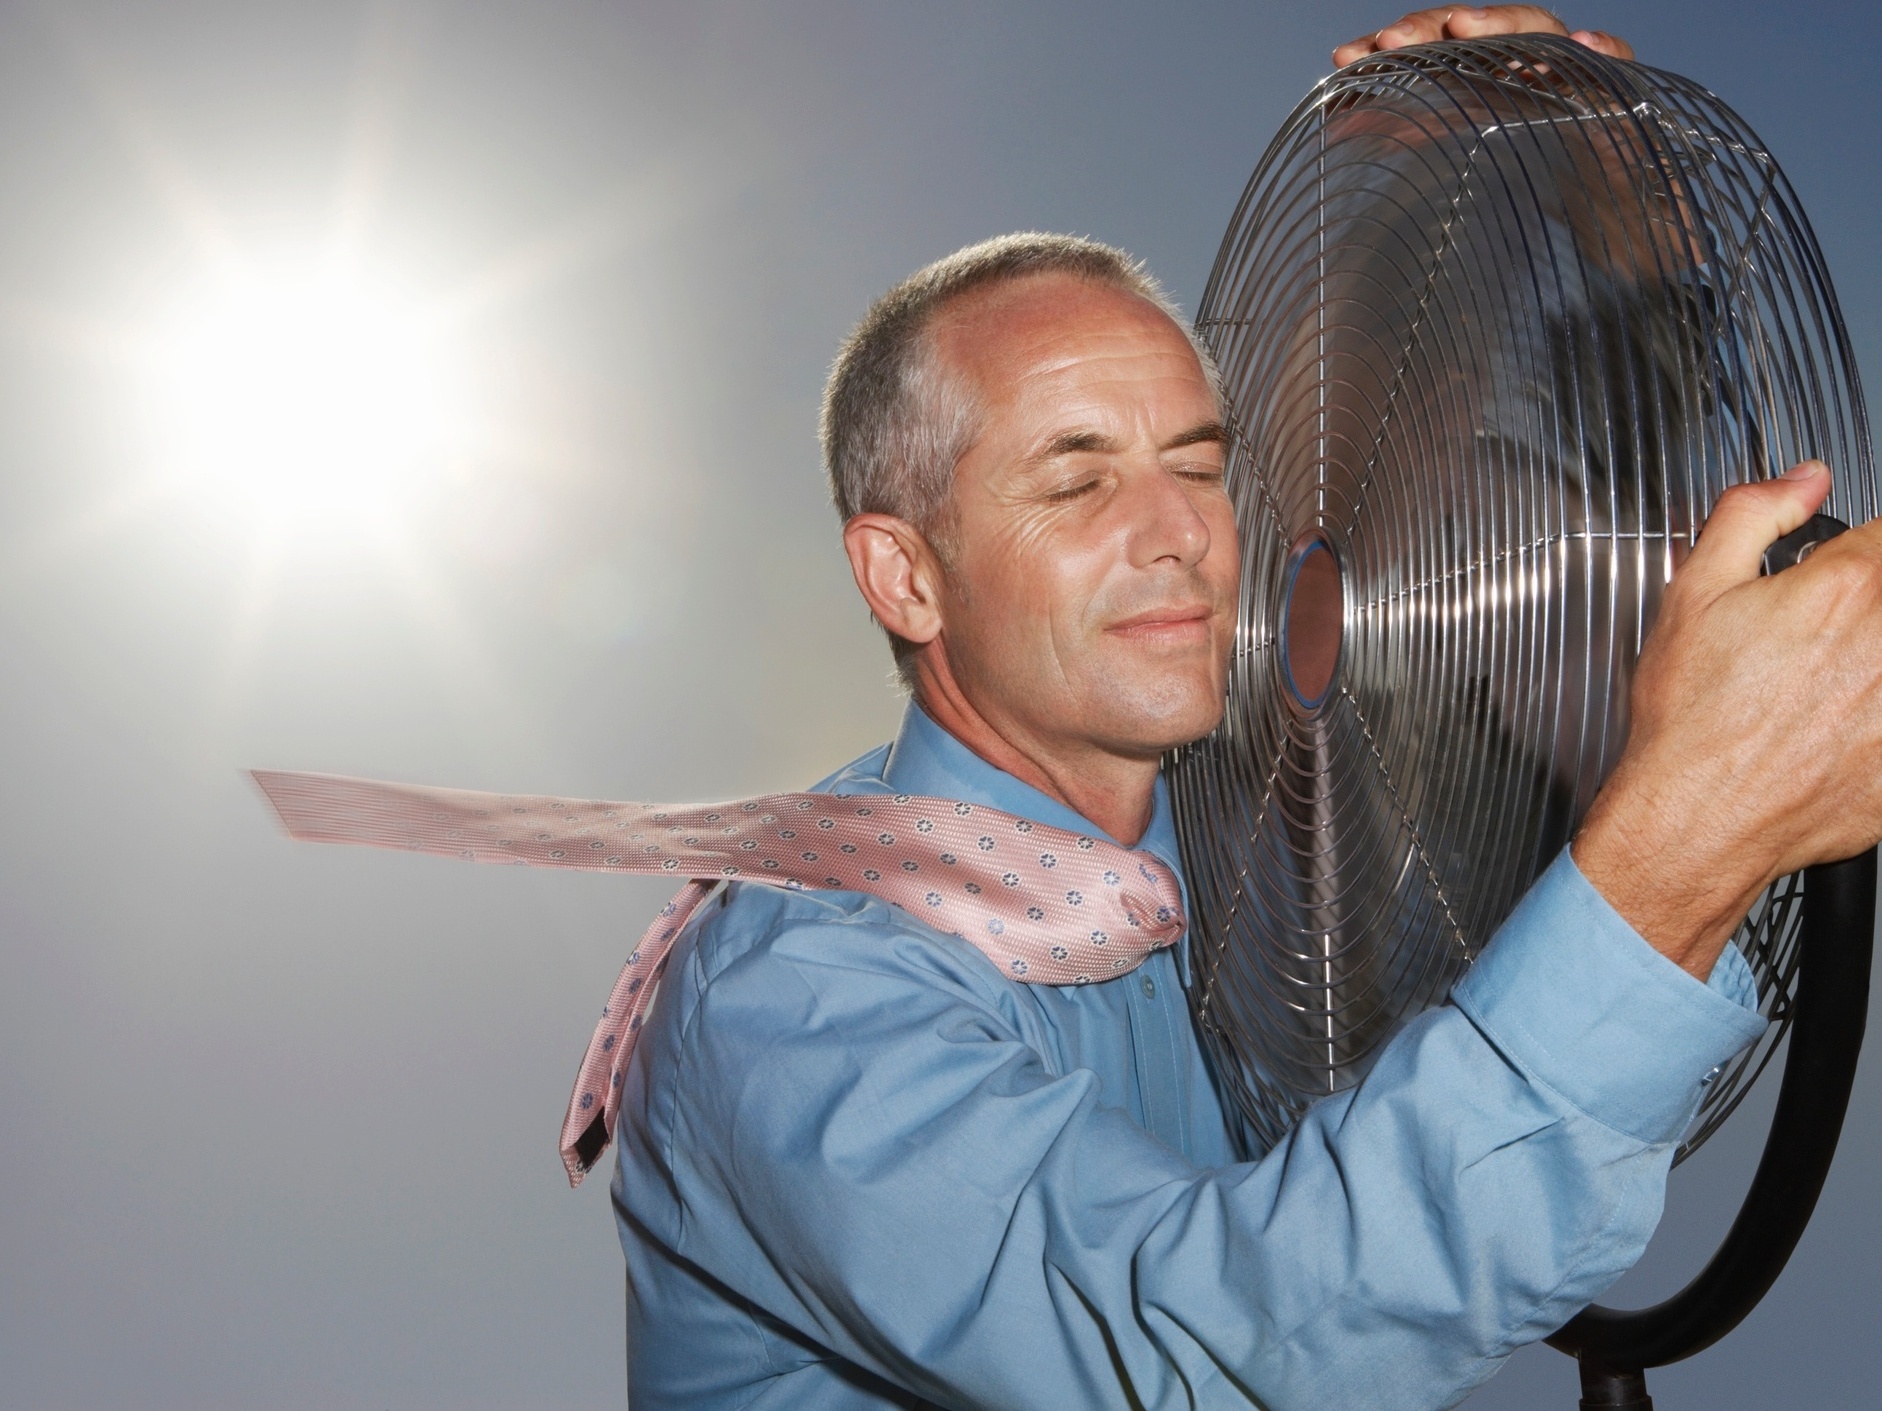 Ar condicionado e umidificador de ar ficam até 20% mais caros após recorde  de calor, Gastar Bem